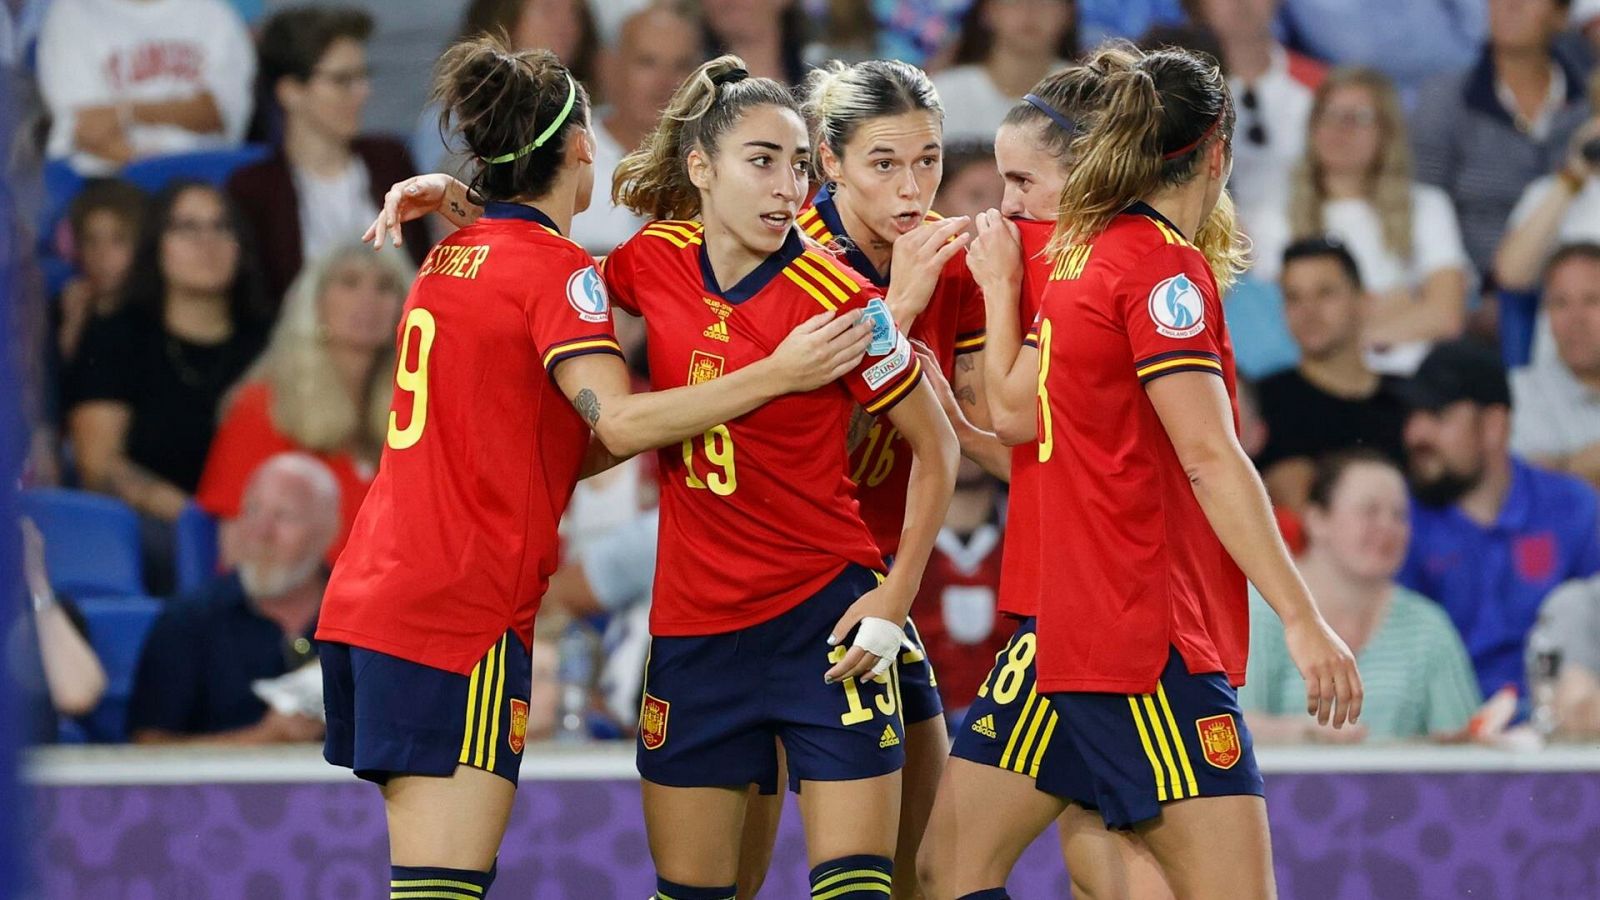 abortar sacudir Autenticación Las jugadoras de la selección española deberían de hablar"